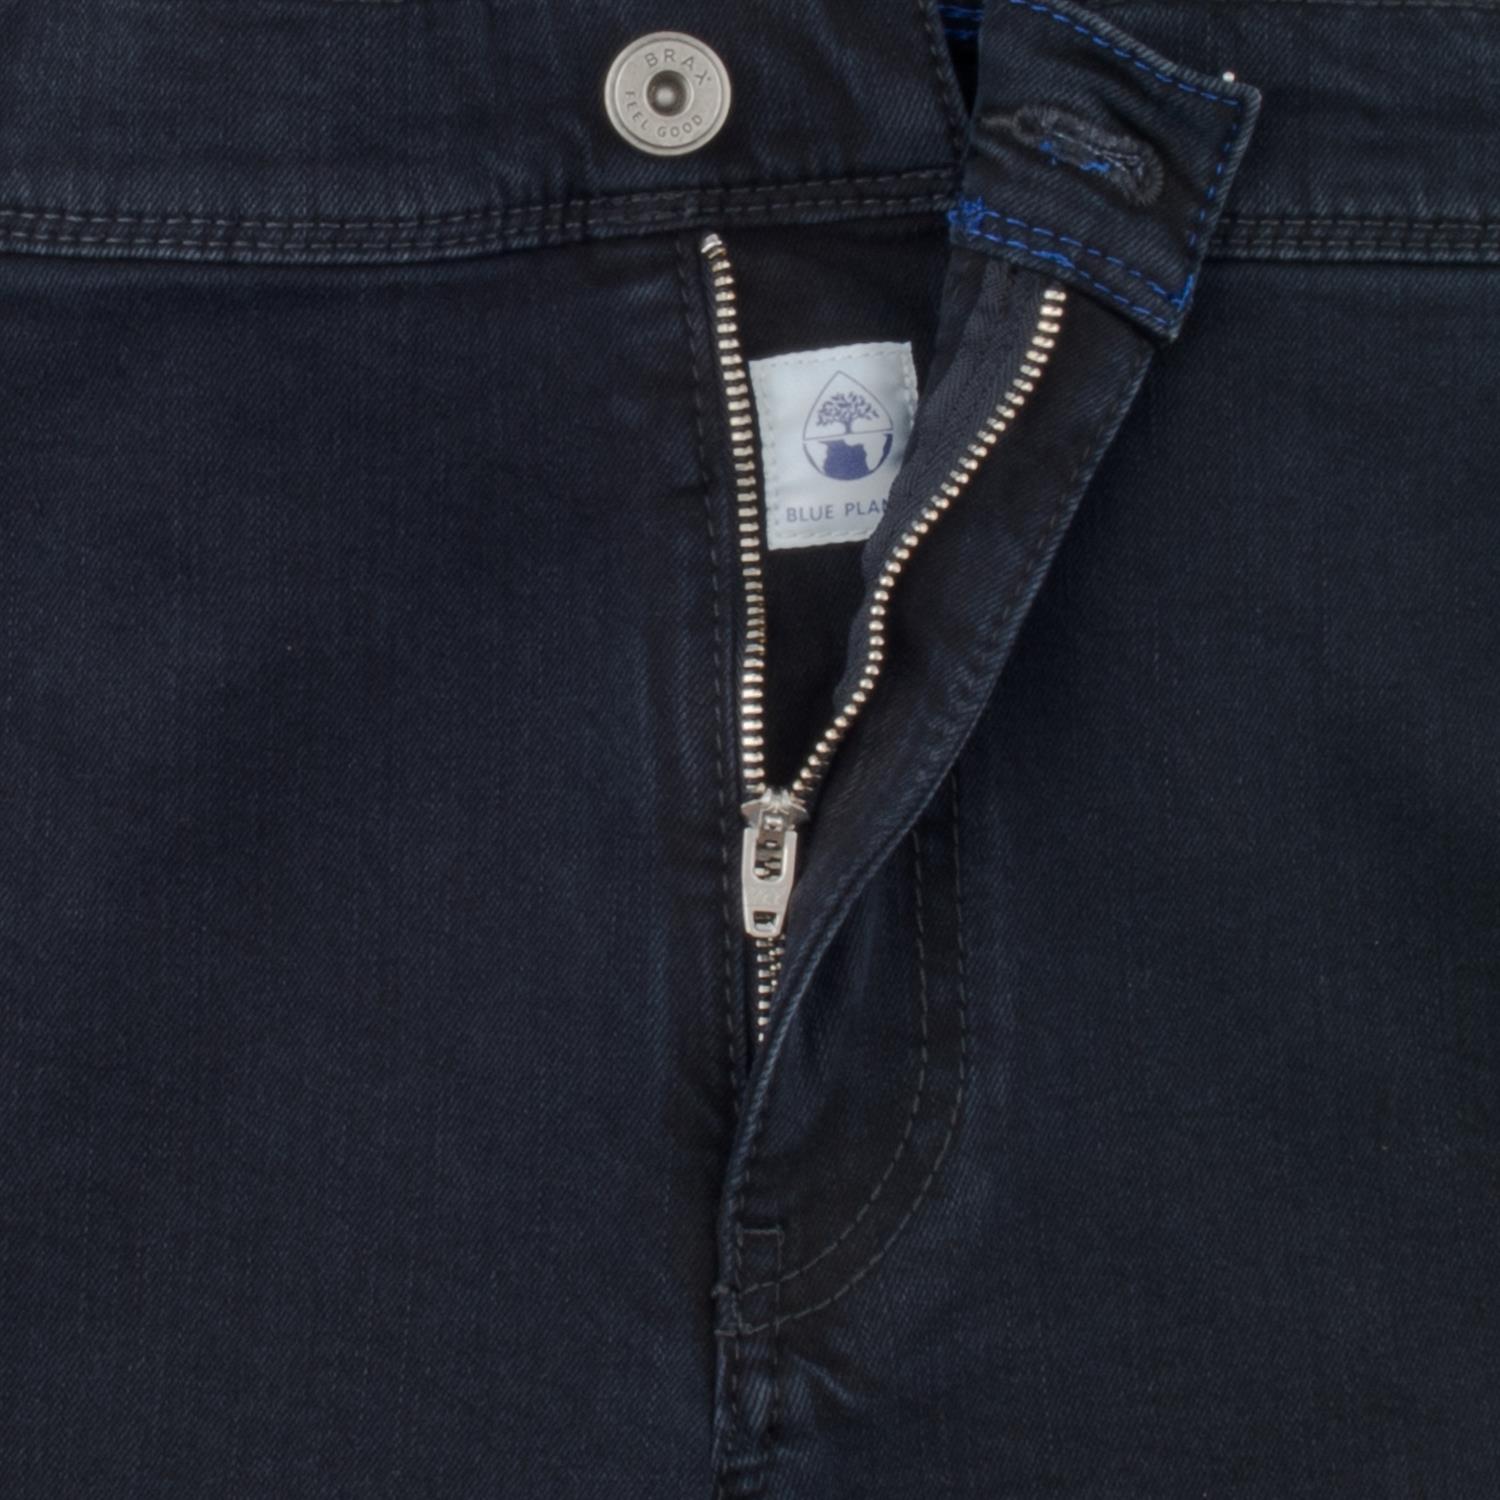 BRAX Herrenmode Übergrößen Jeans in dunkelblau kaufen